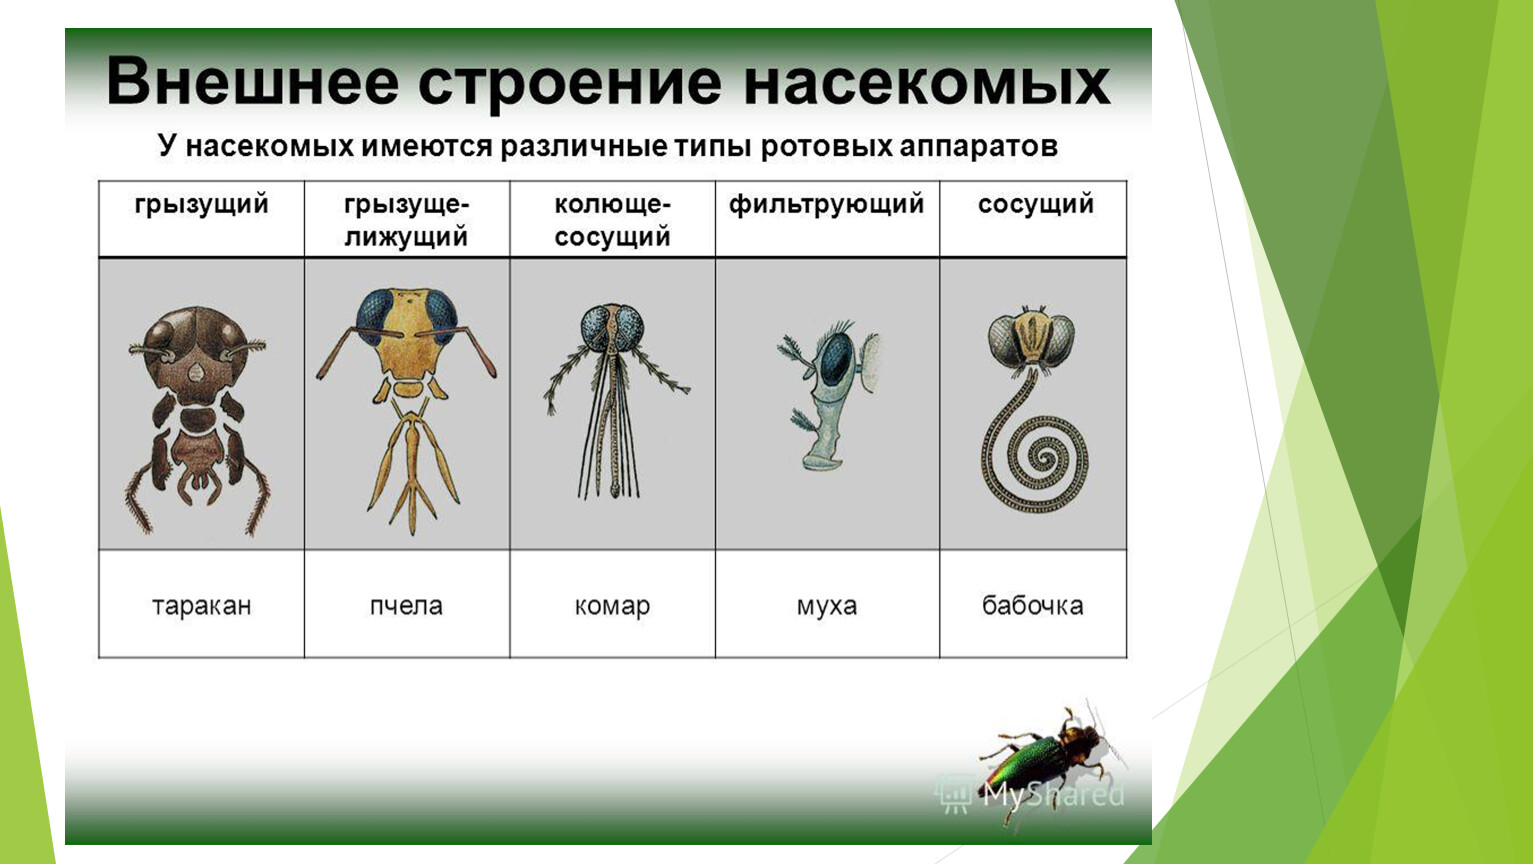 Различные типы ротовых аппаратов насекомых